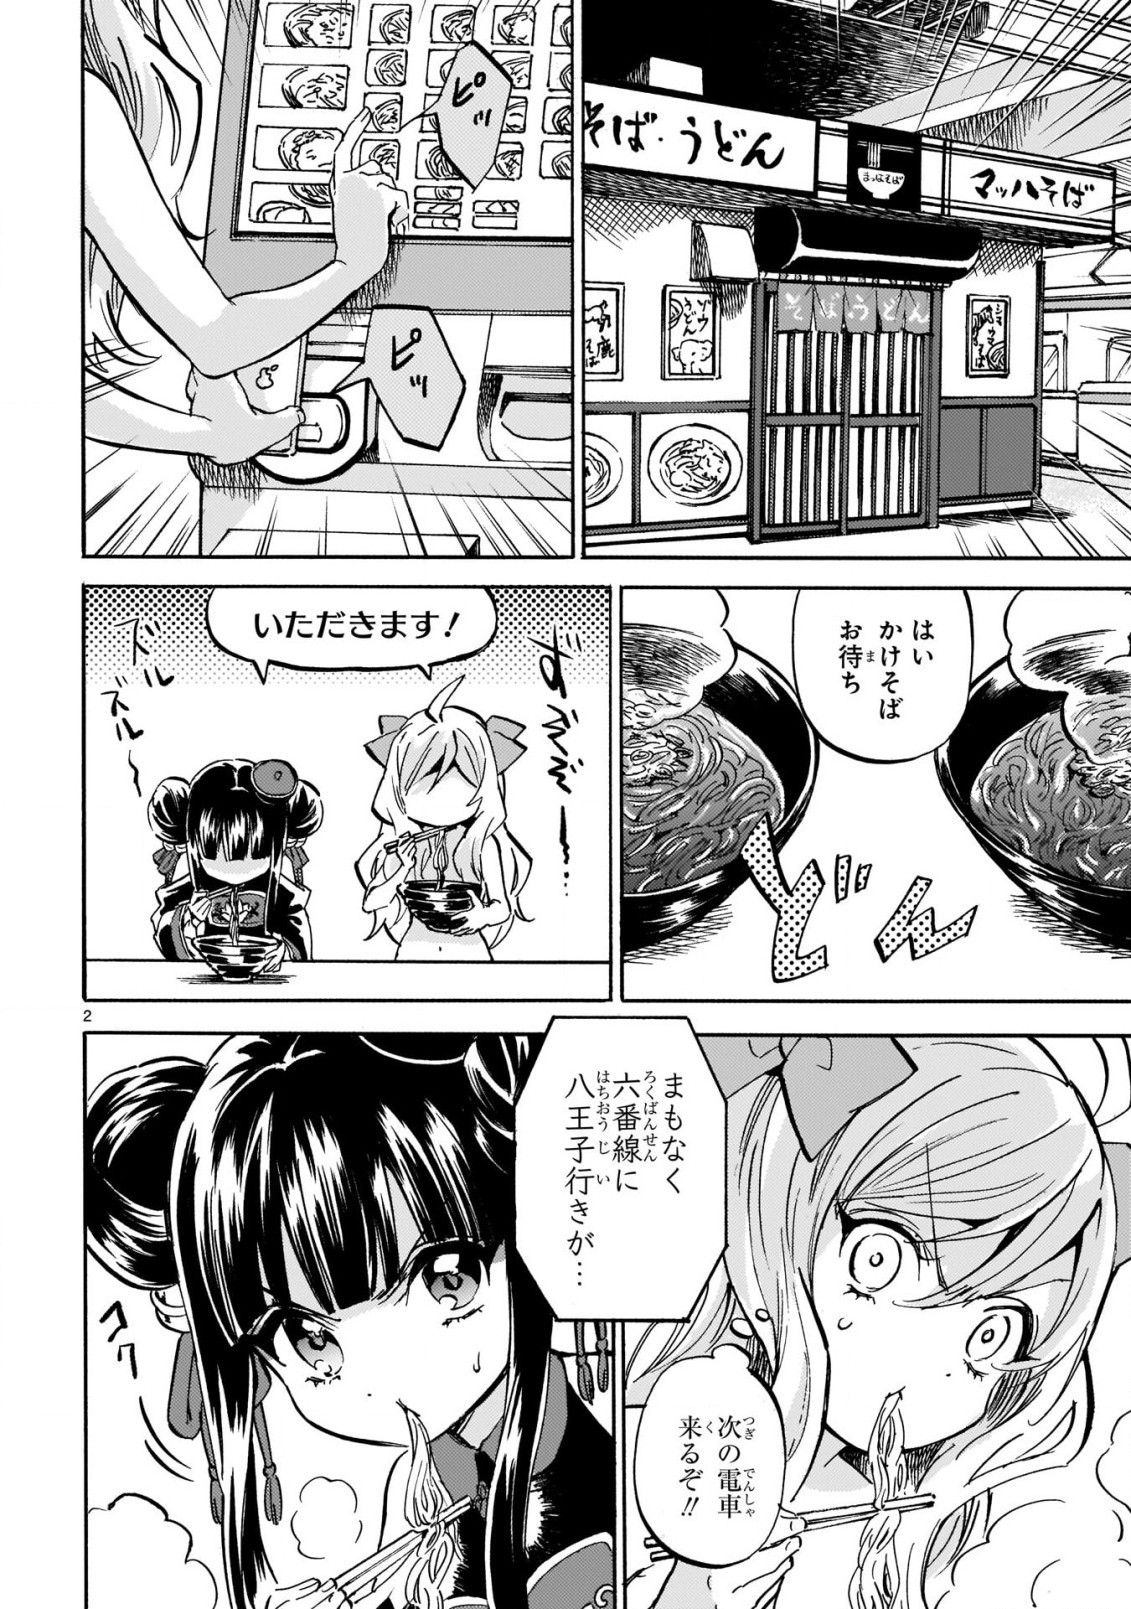 Jashin-chan Dropkick - Chapter 211 - Page 2